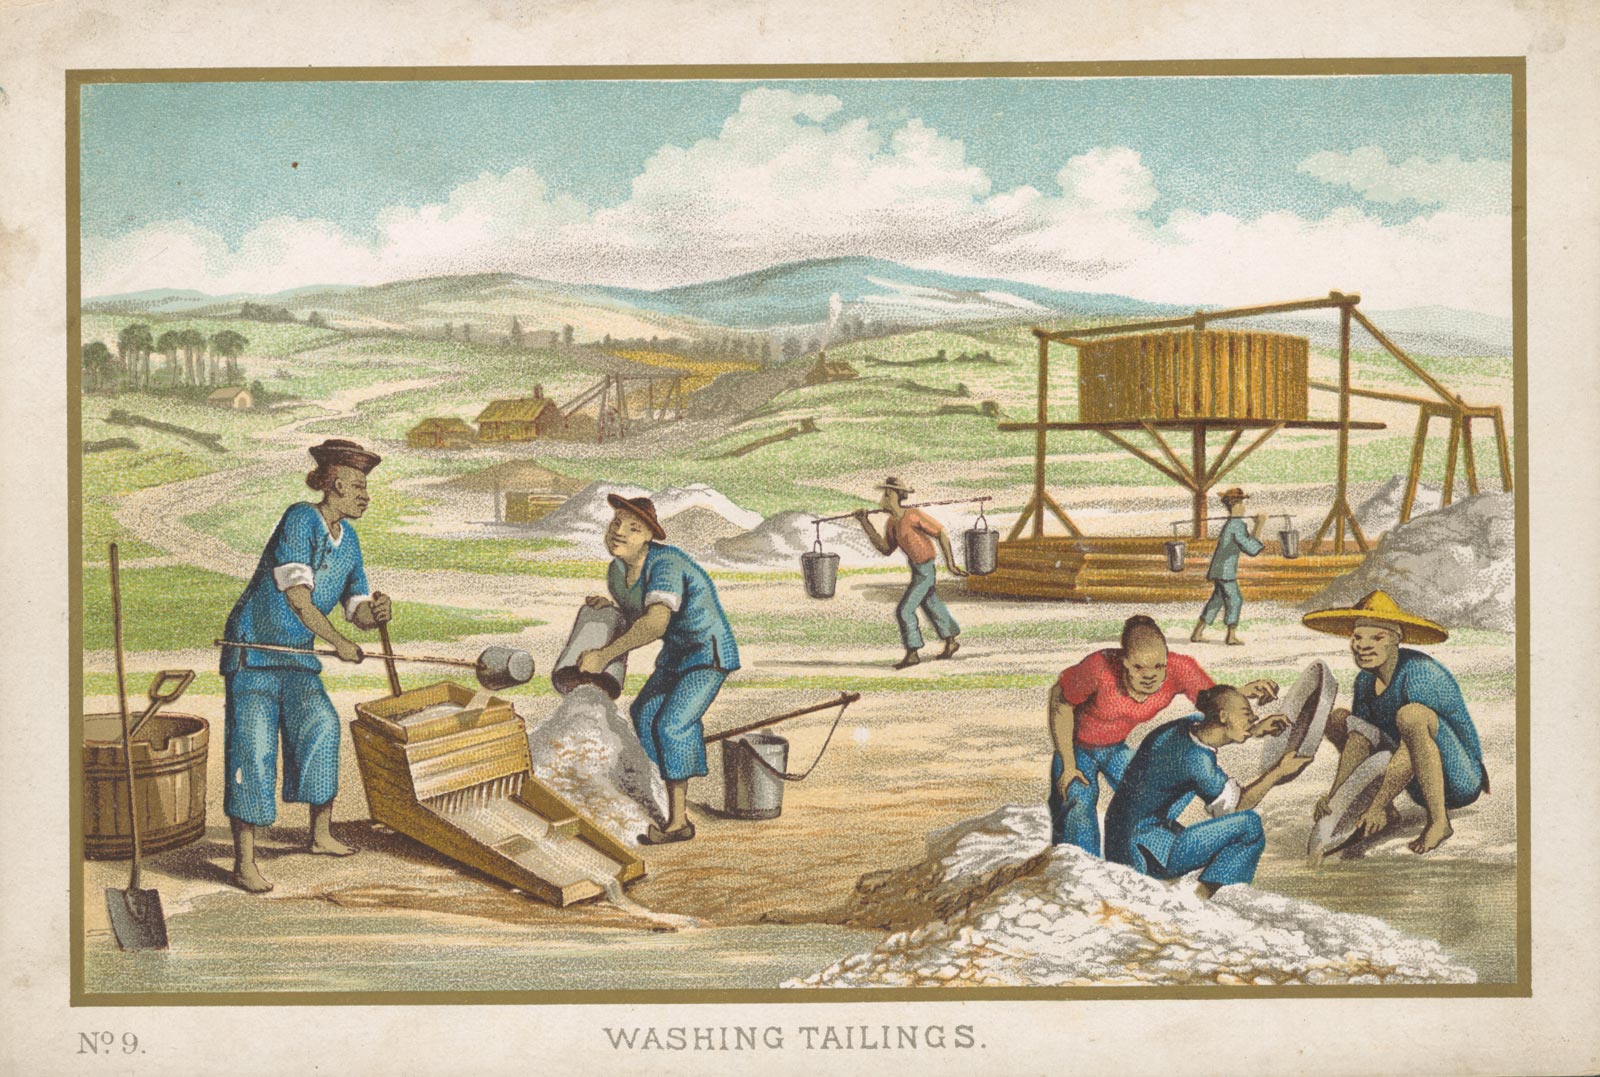 <p><em>Washing Tailings, </em>1870s</p>
